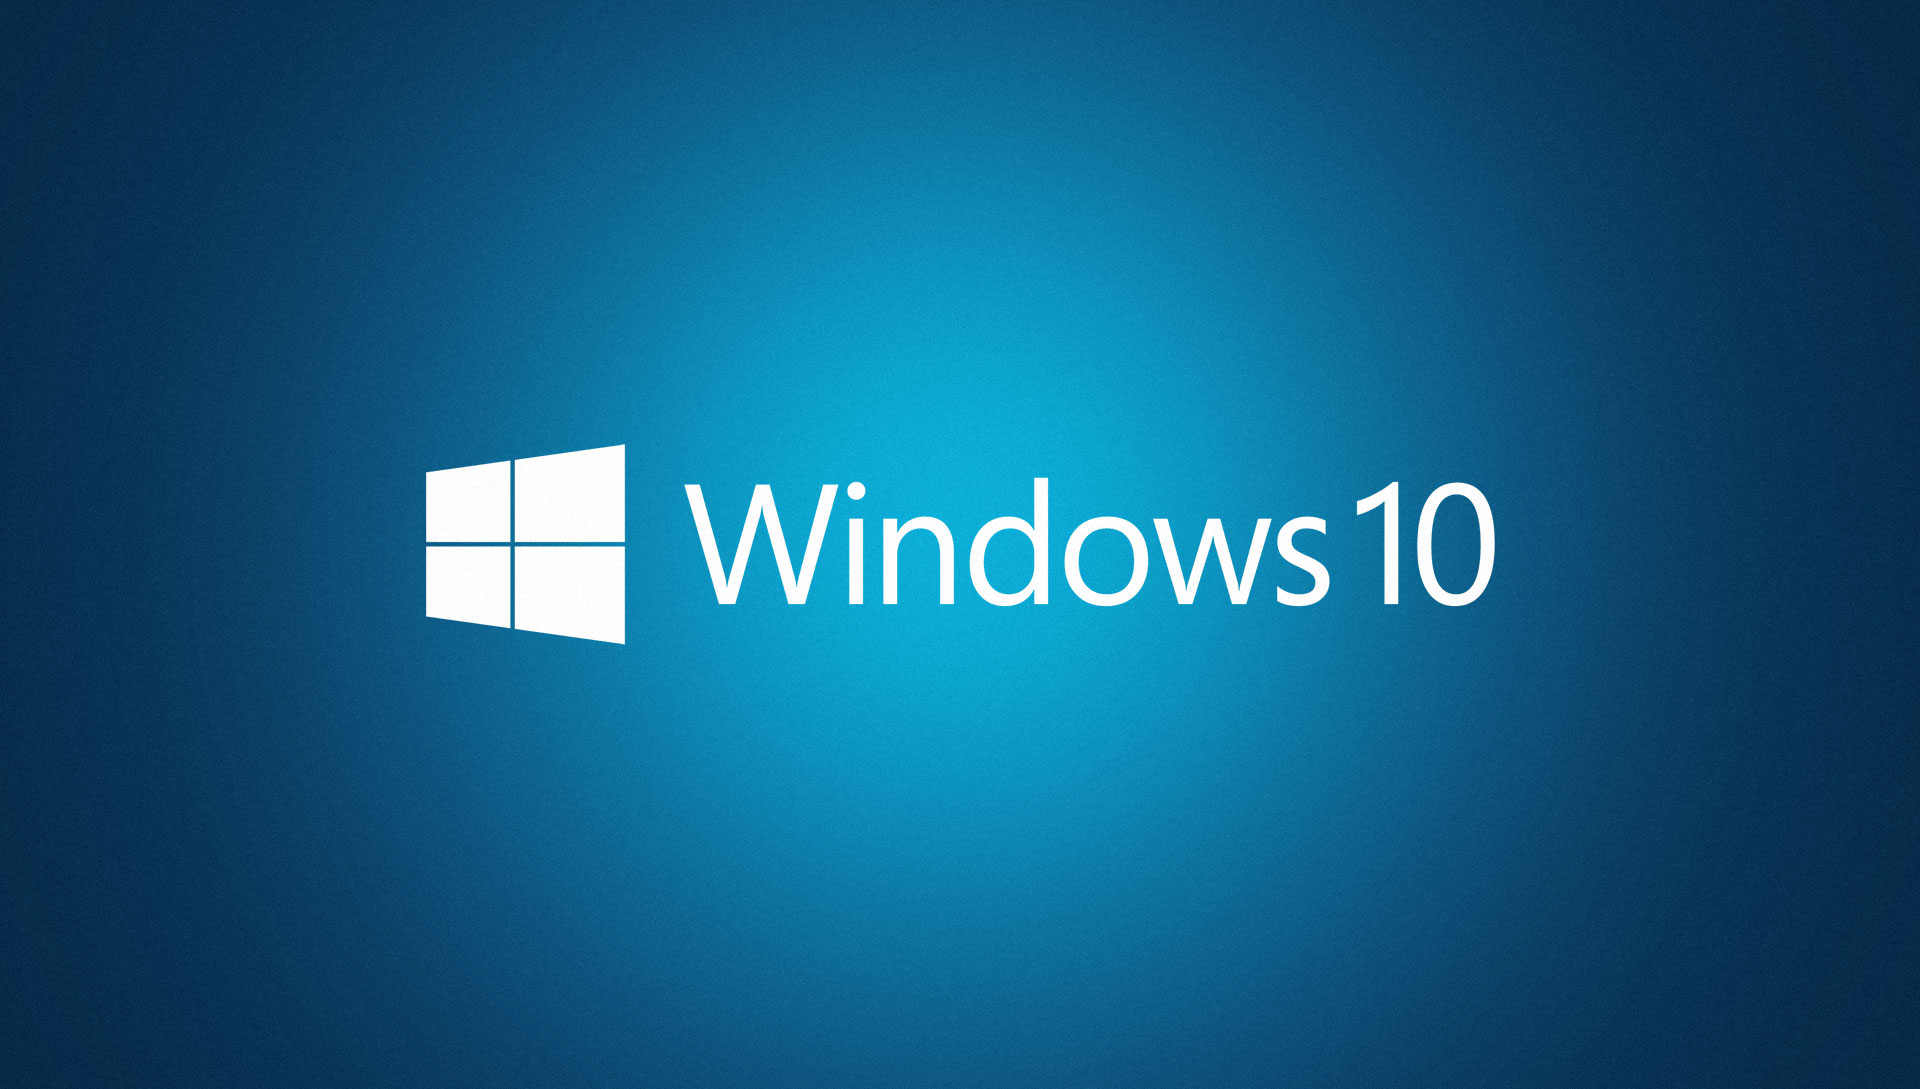 Windows 10 : Microsoft veut éliminer les versions d'avant 2020